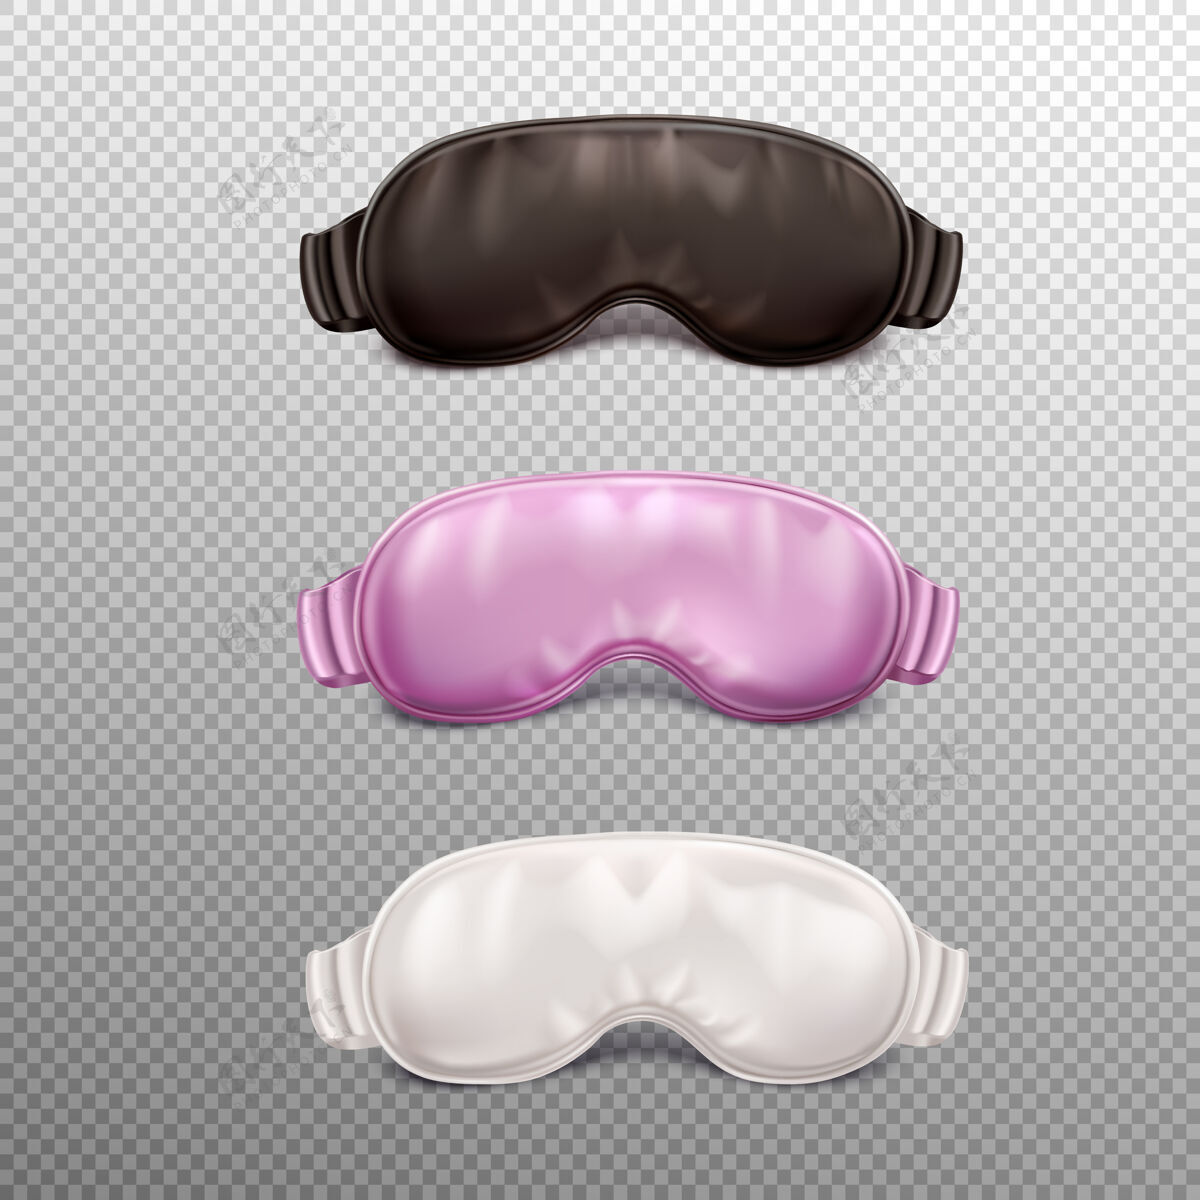 面具睡眠配件现实设置三个彩色面具隔离集睡眠配件